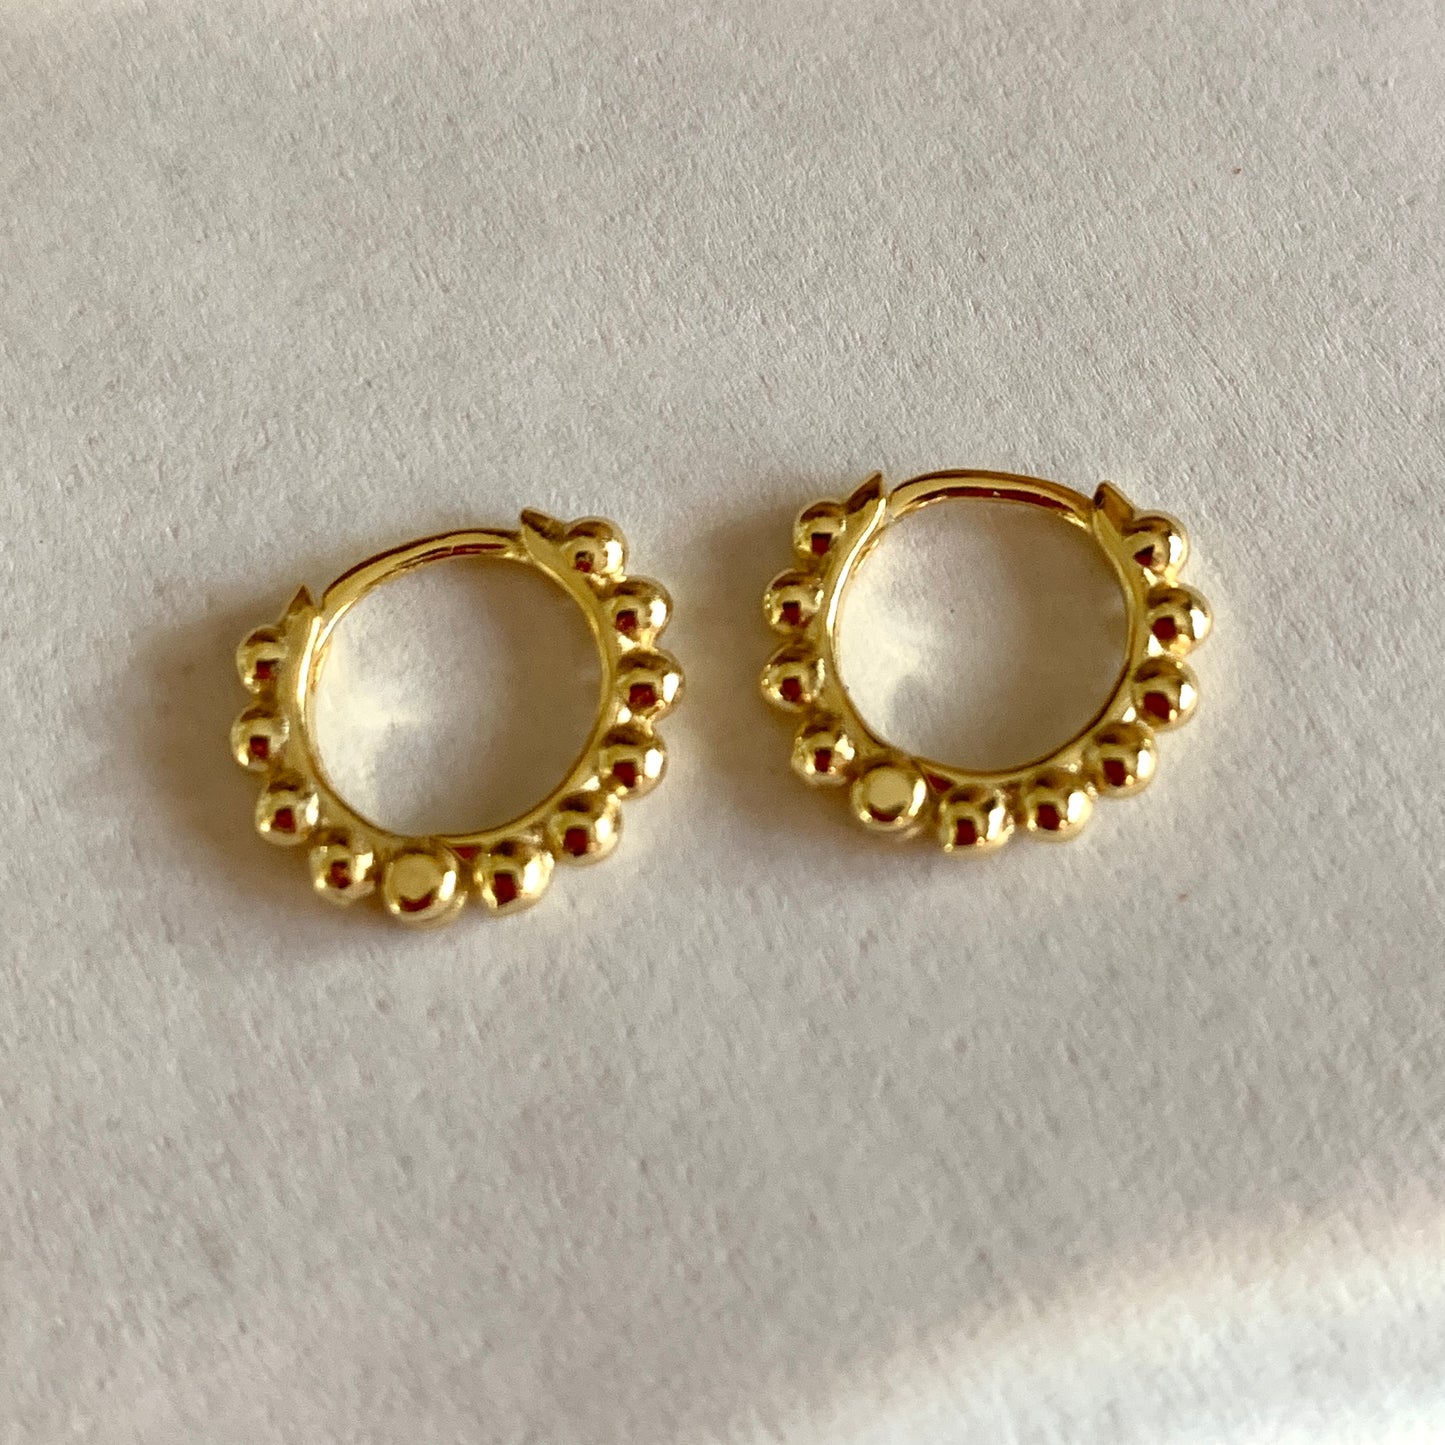 Beaded Hoop Earrings, Sterling Silver with 14K Gold Plating